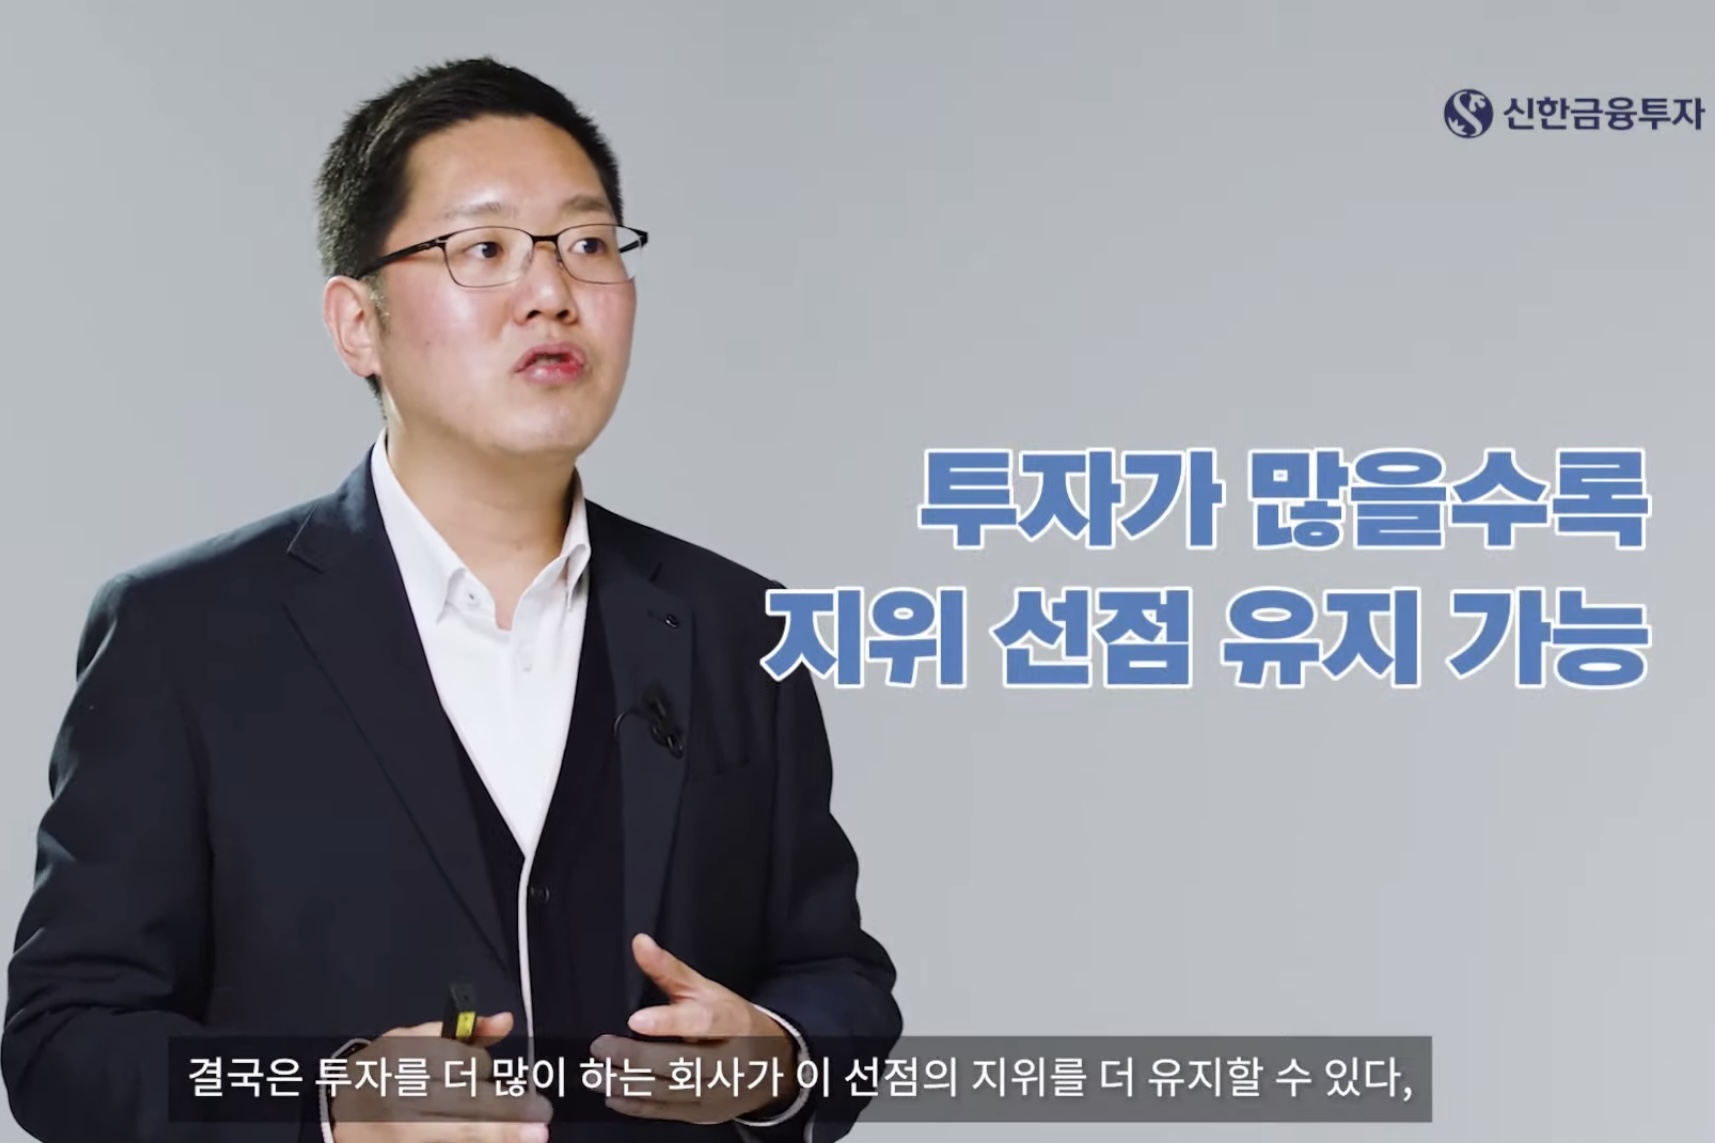 [온라인 현장] 신한금융투자 온라인 포럼, "2차전지 한국 독주 지속"